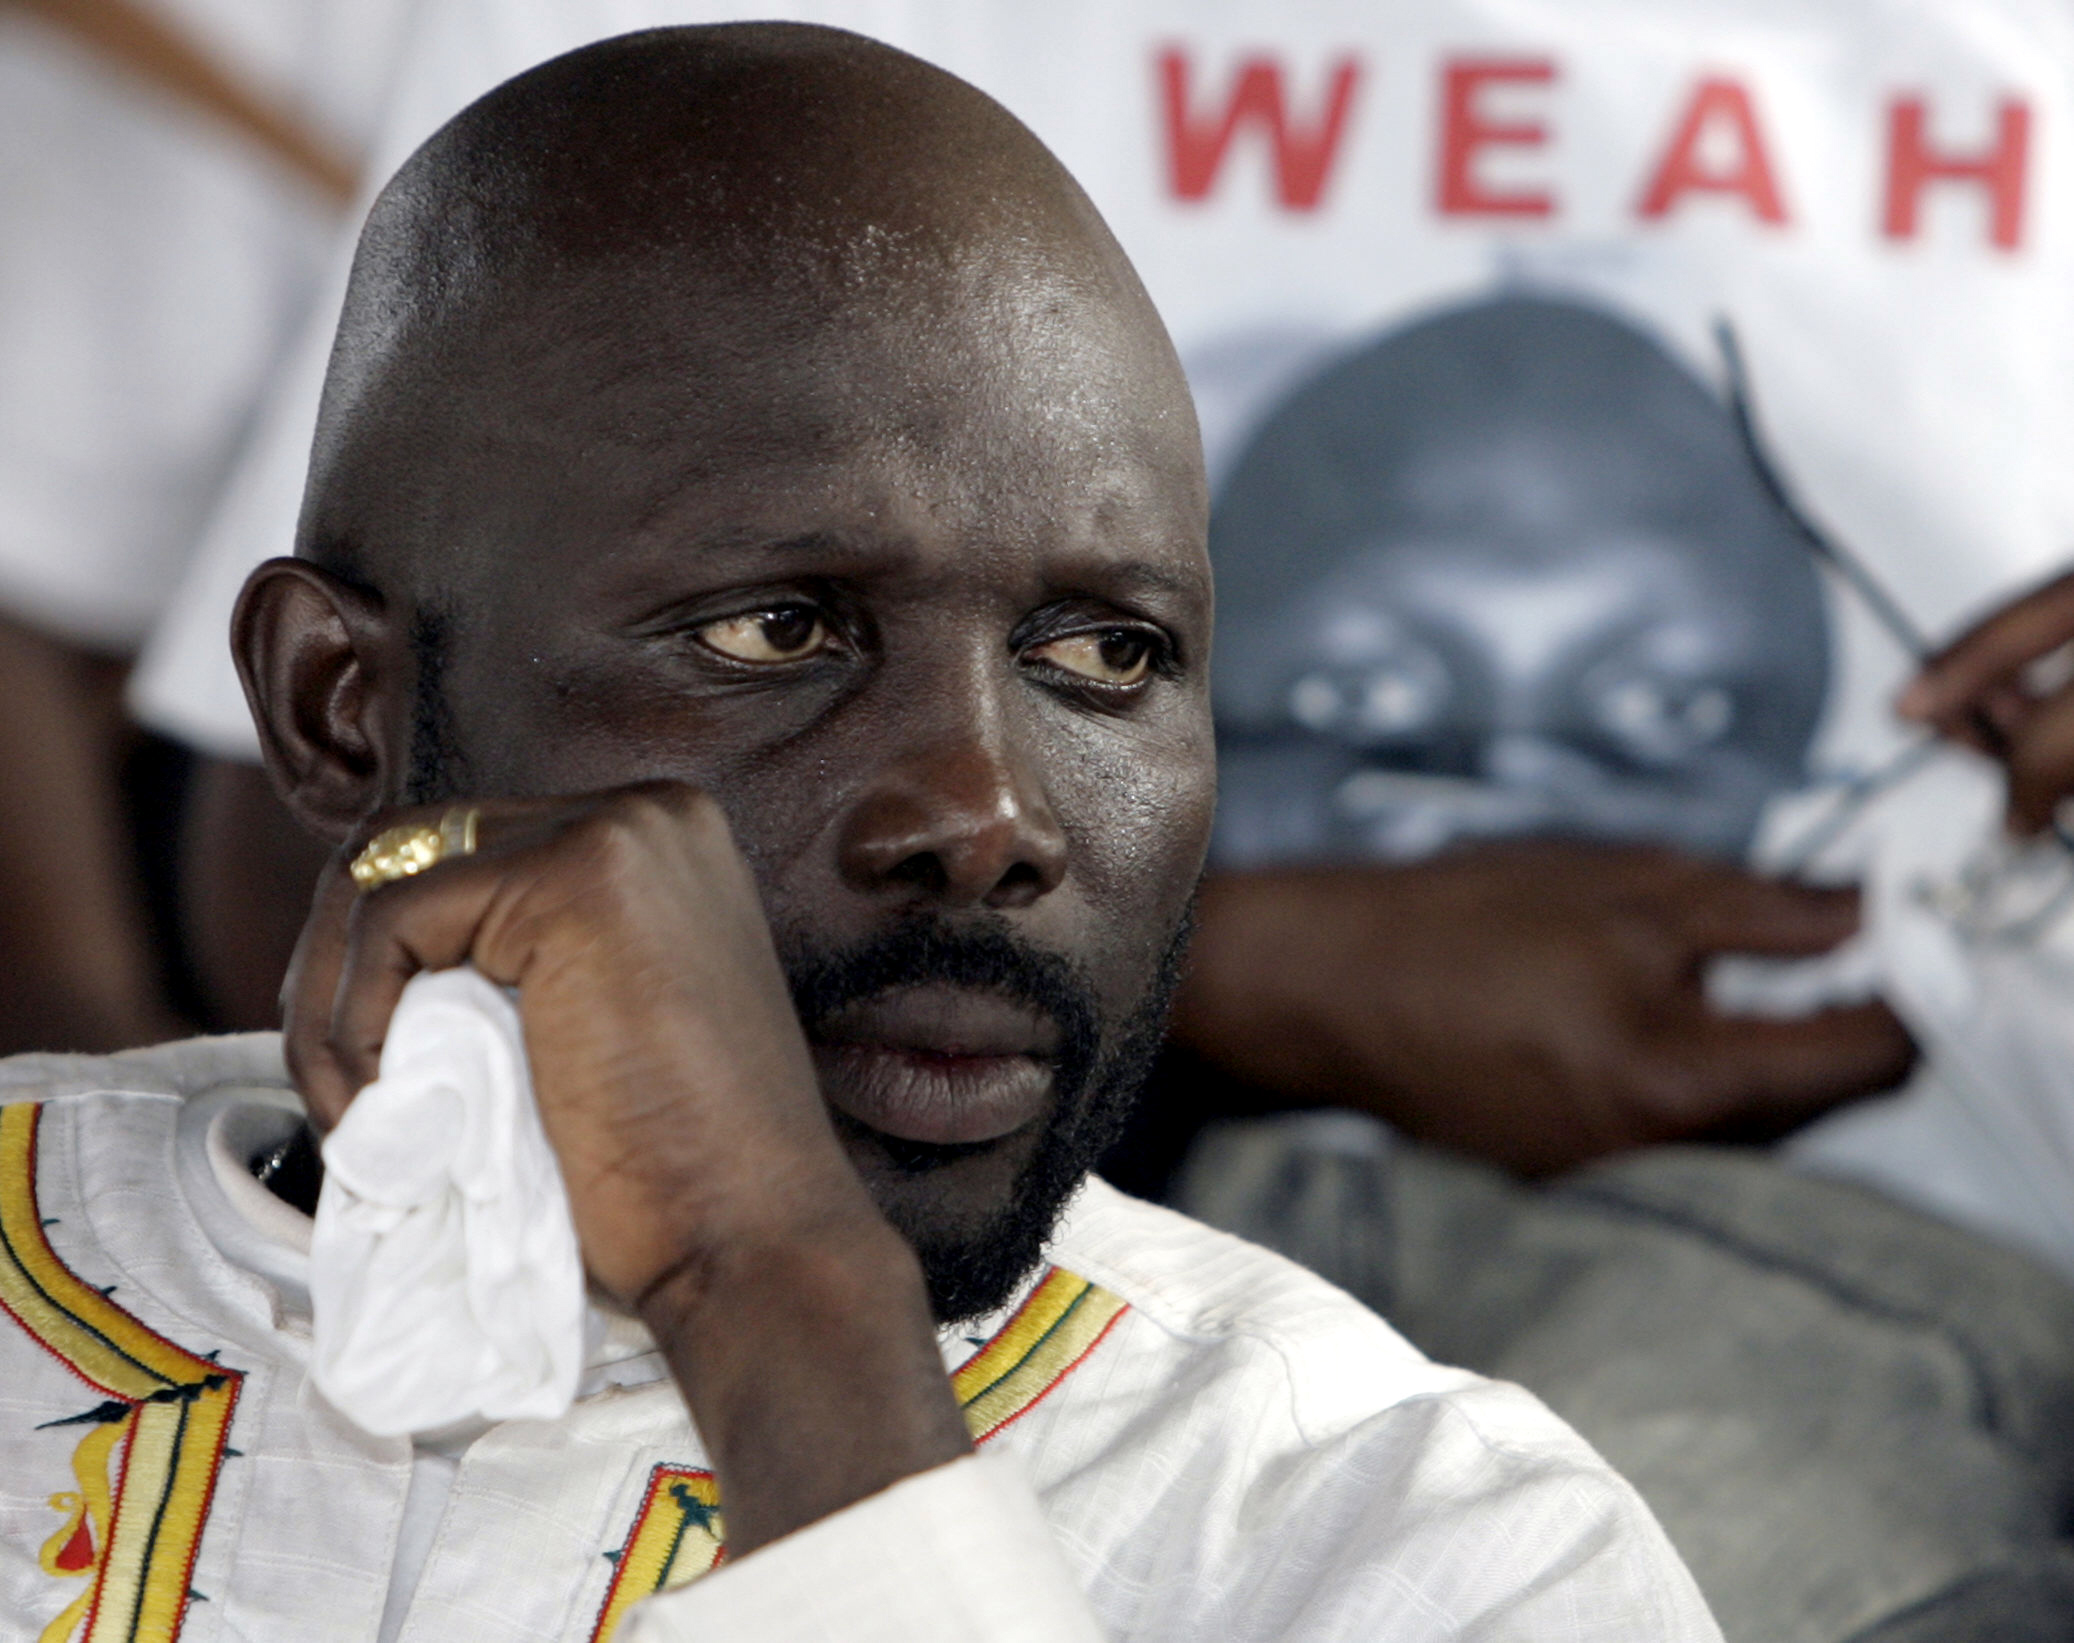 Λιβερία: Προβάδισμα για τον πρώην σταρ του ποδοσφαίρο Τζορτζ Γουεά